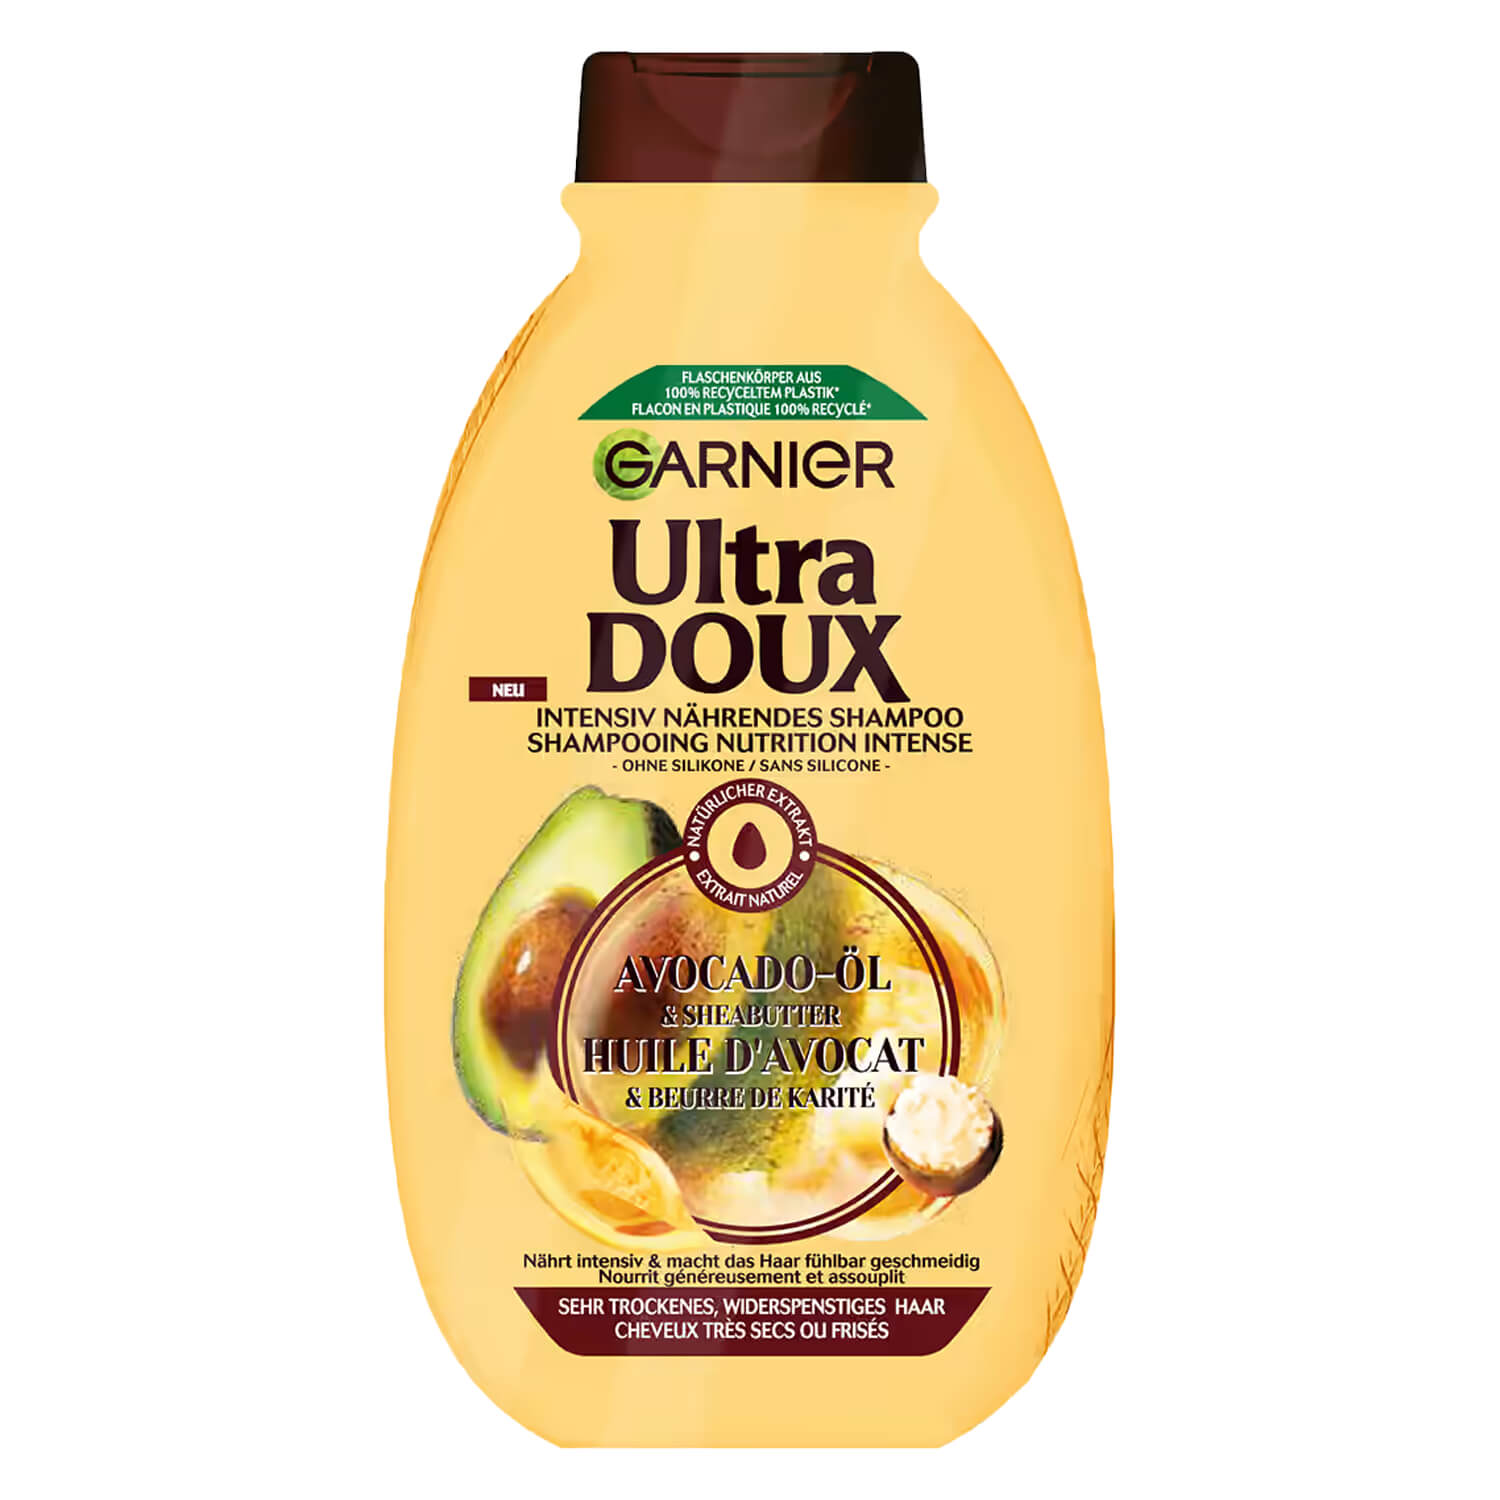 GARNIER Doux Haircare - Avocado Oil & Butter | PerfectHair.ch